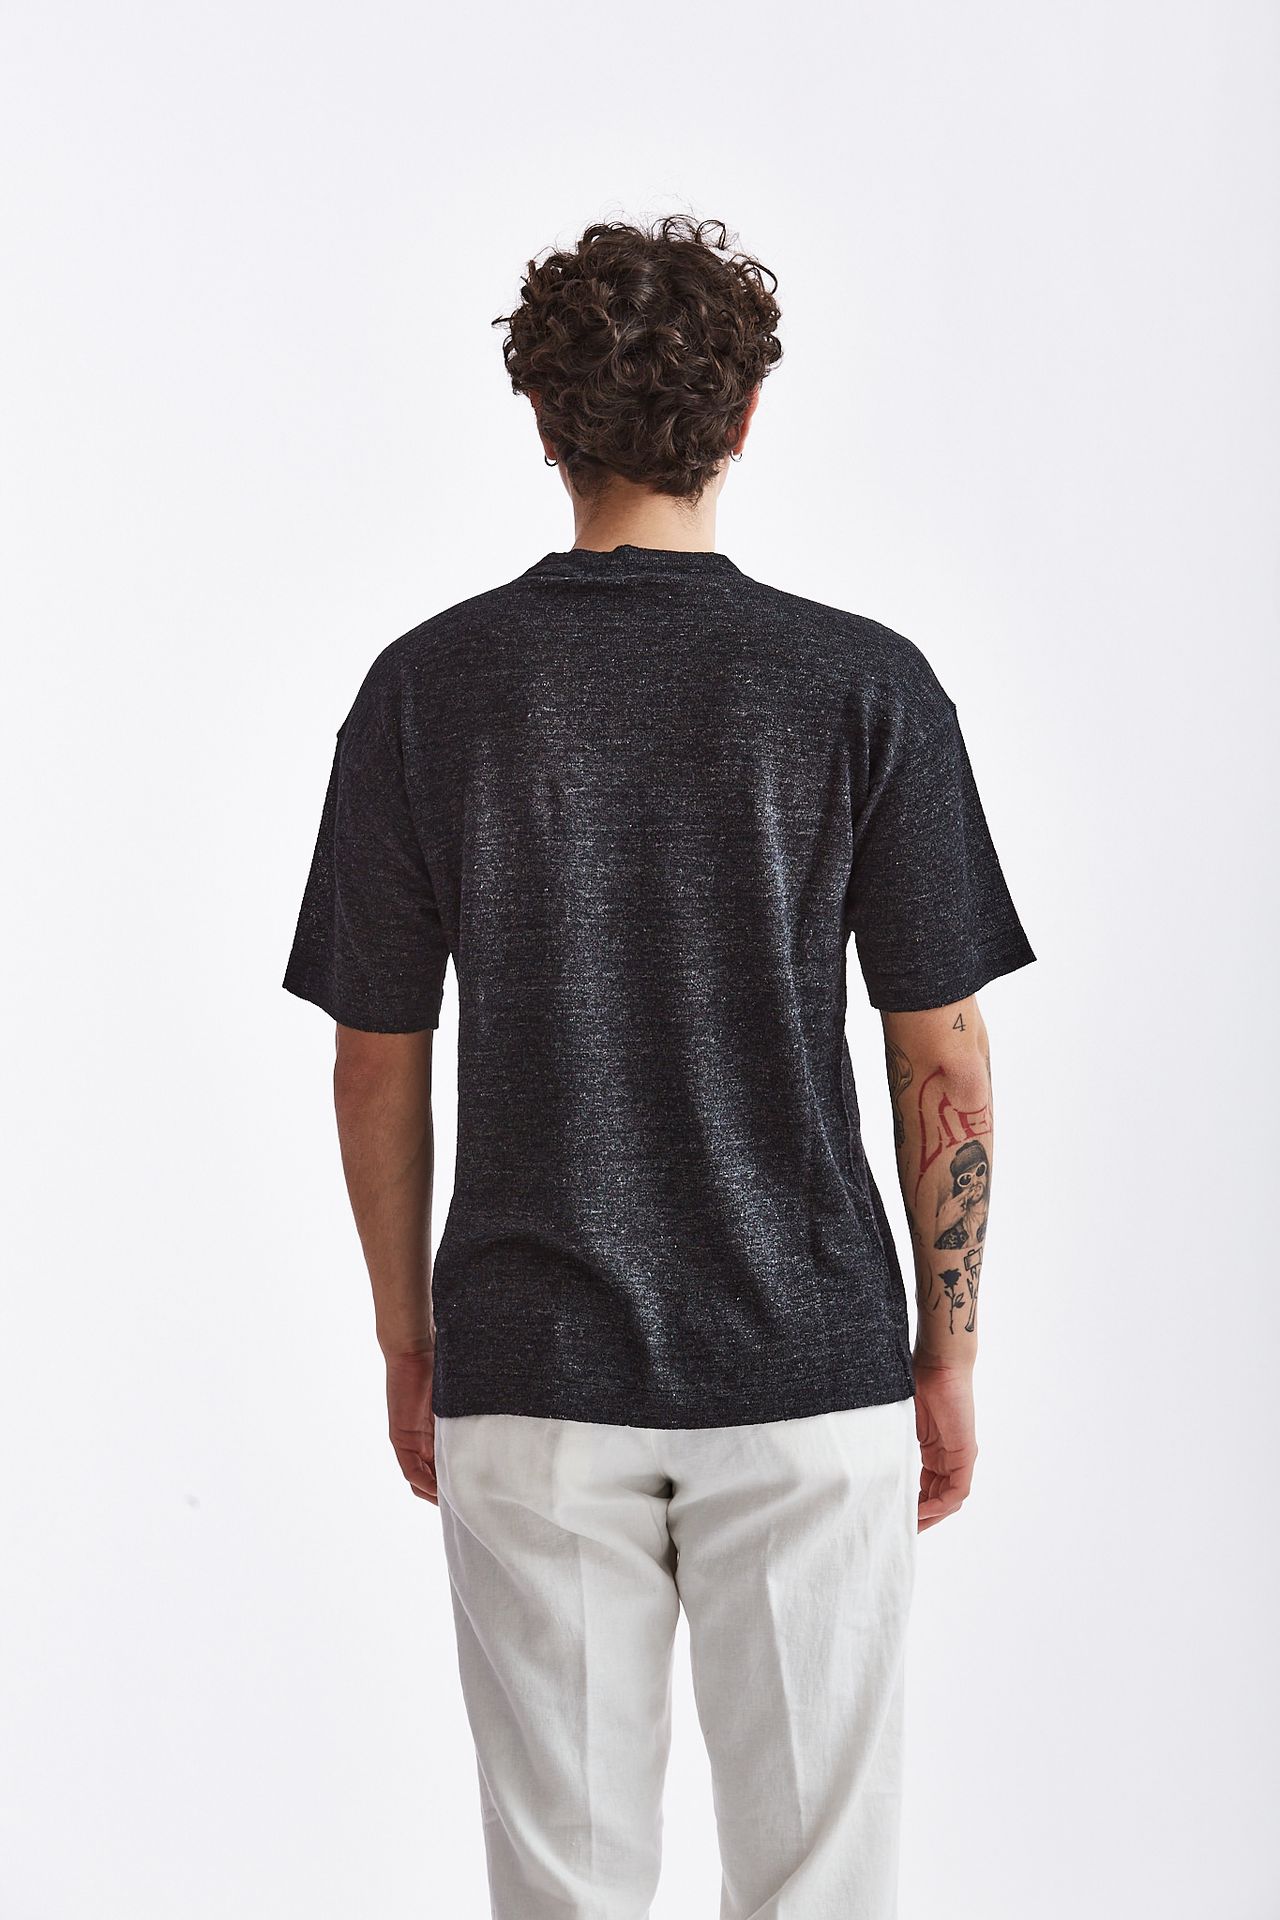 T-shirt in lino/cotone antracite